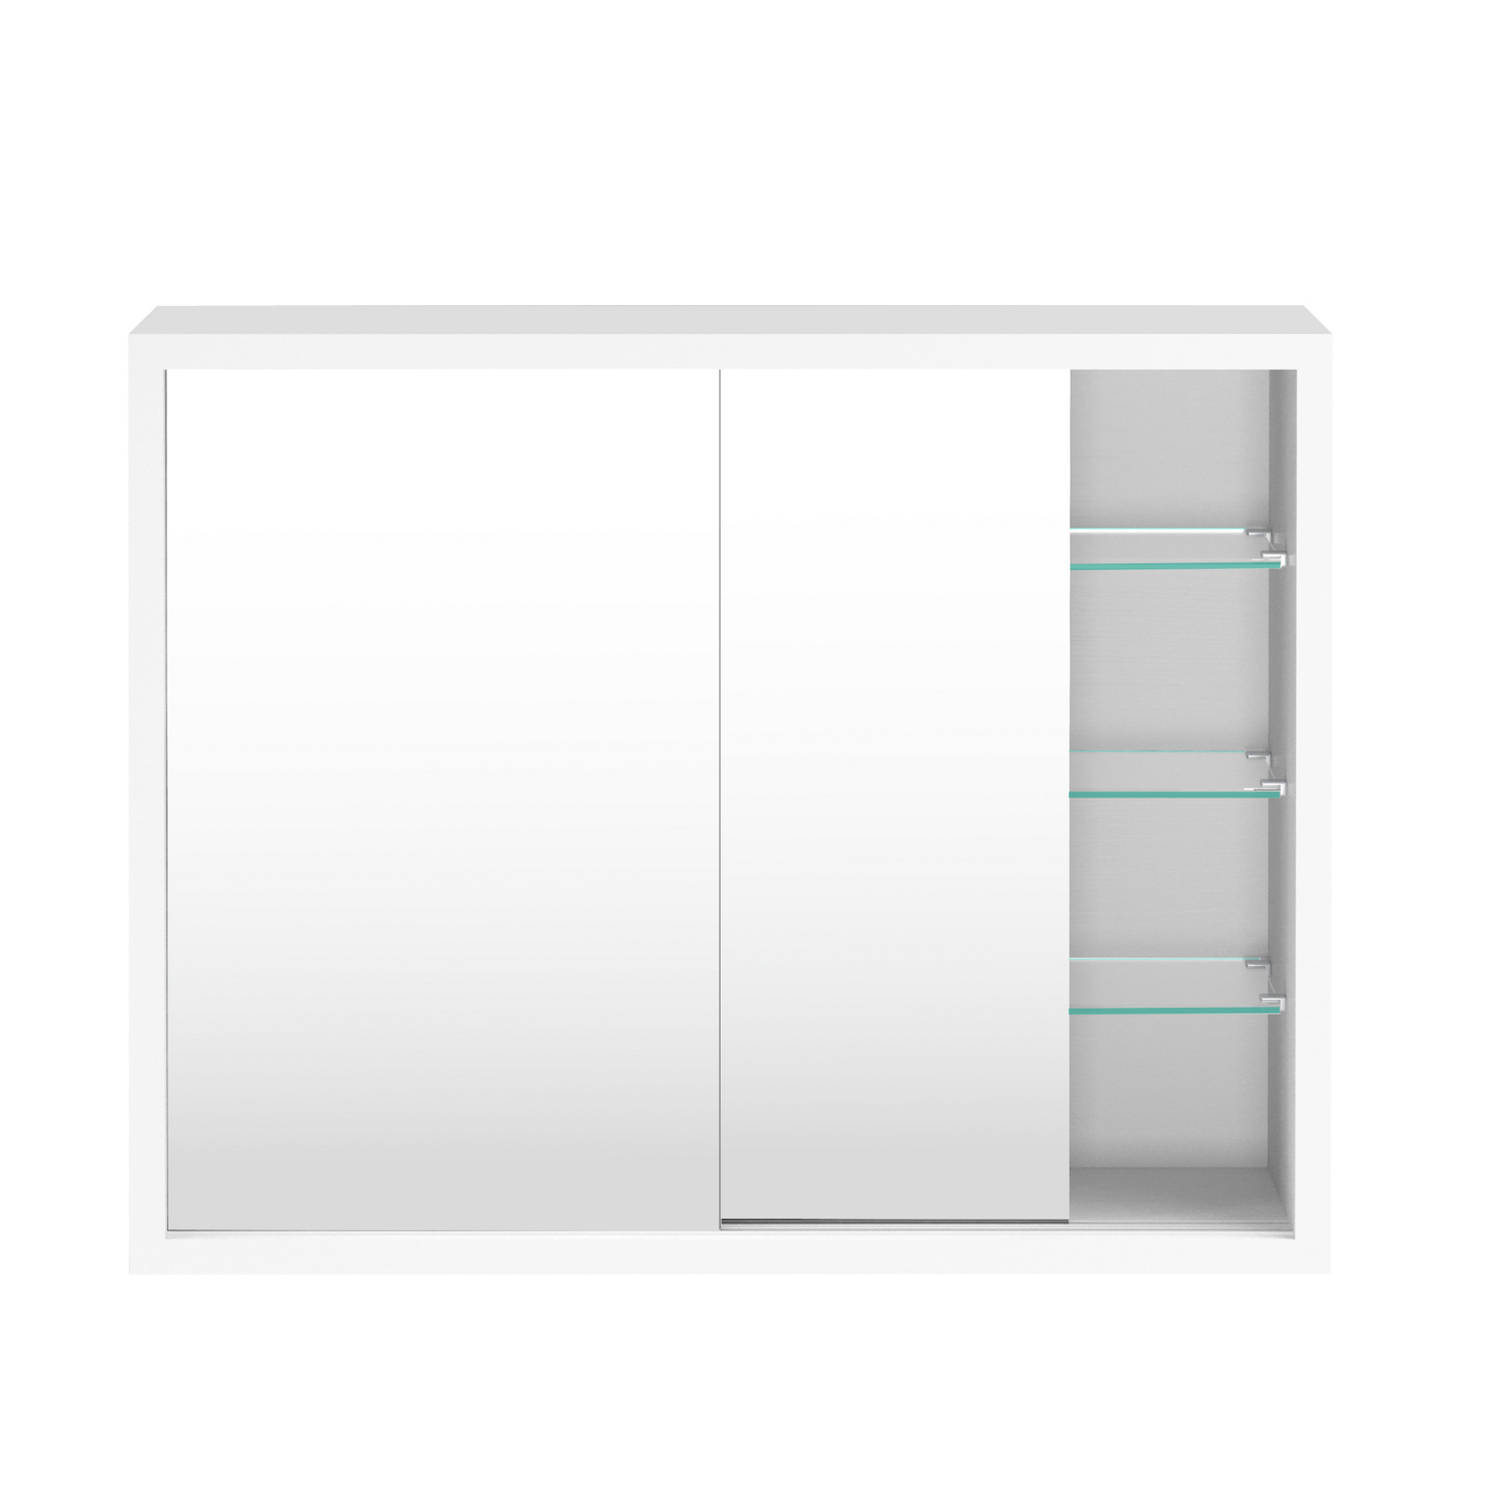 Medicijnkastje spiegelkast boven wastafel badkamer toilet schuifdeuren 50 x 40 x 14 cm